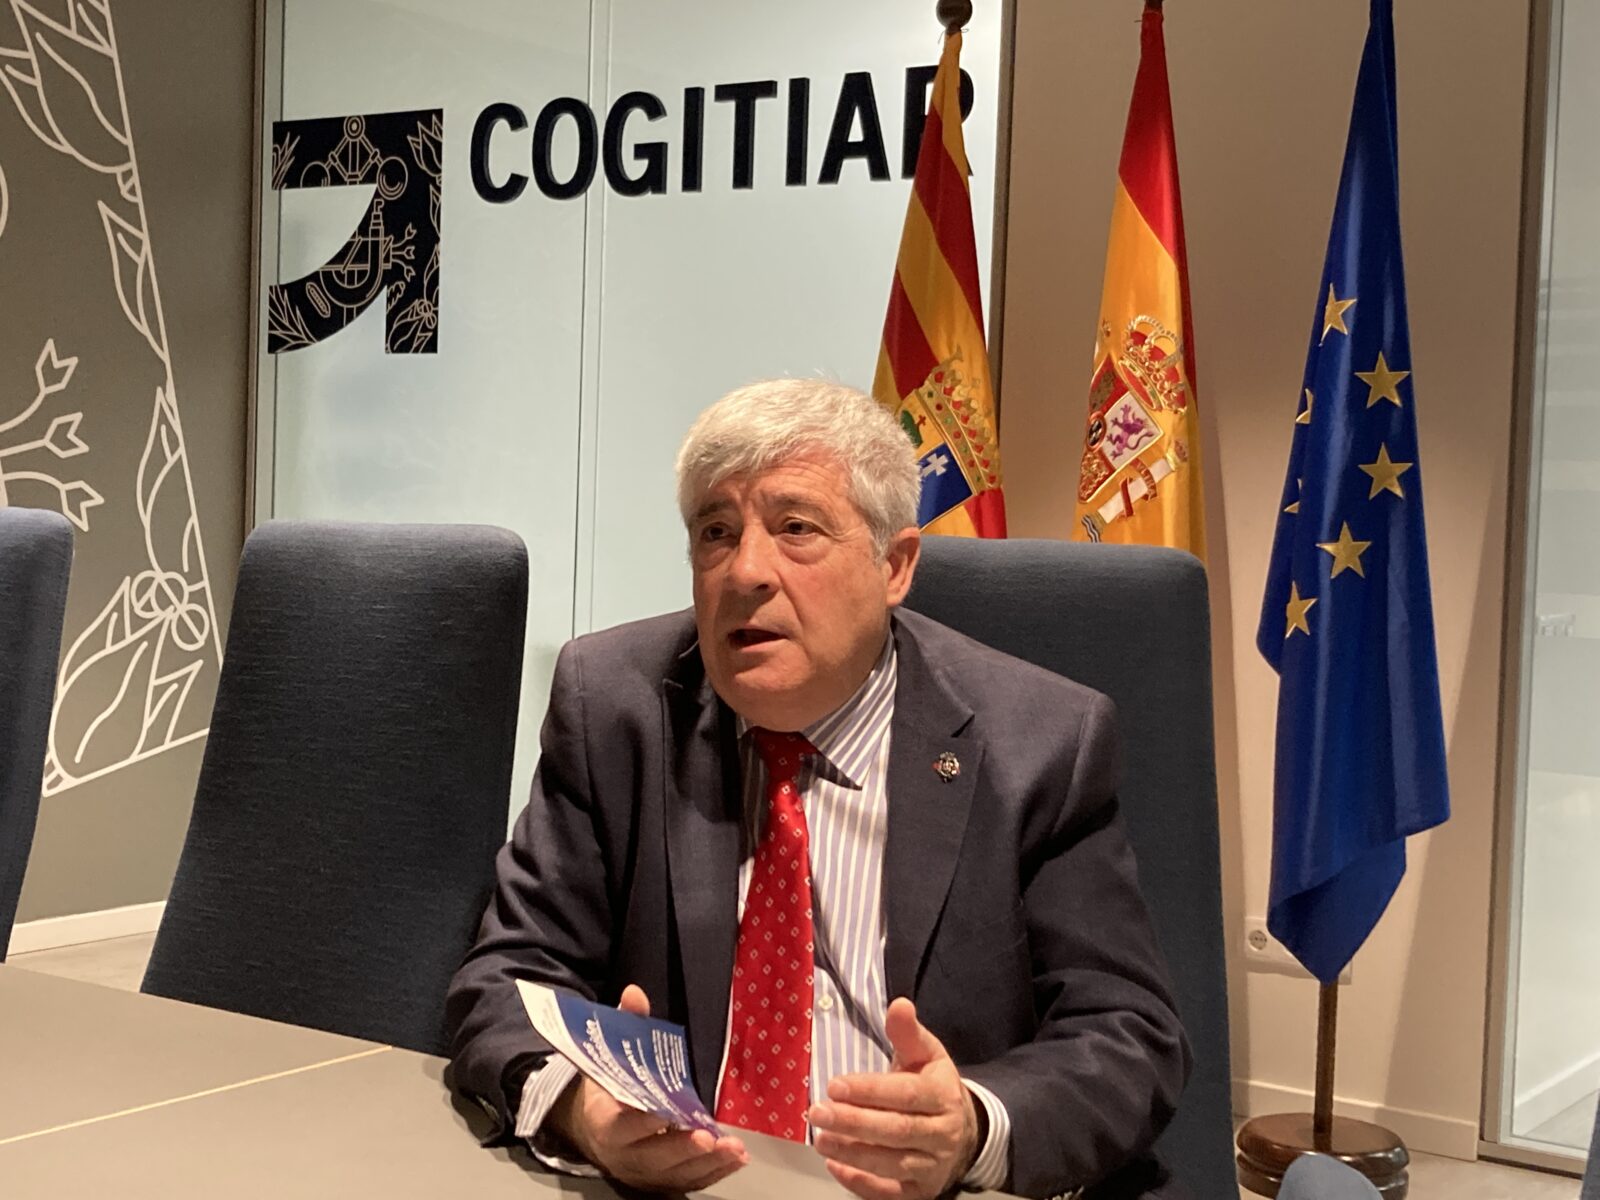 Conoce a nuestros socios: COGITIAR AESSIA. Asociación de Entidades del Sistema de la Seguridad Industrial de Aragón